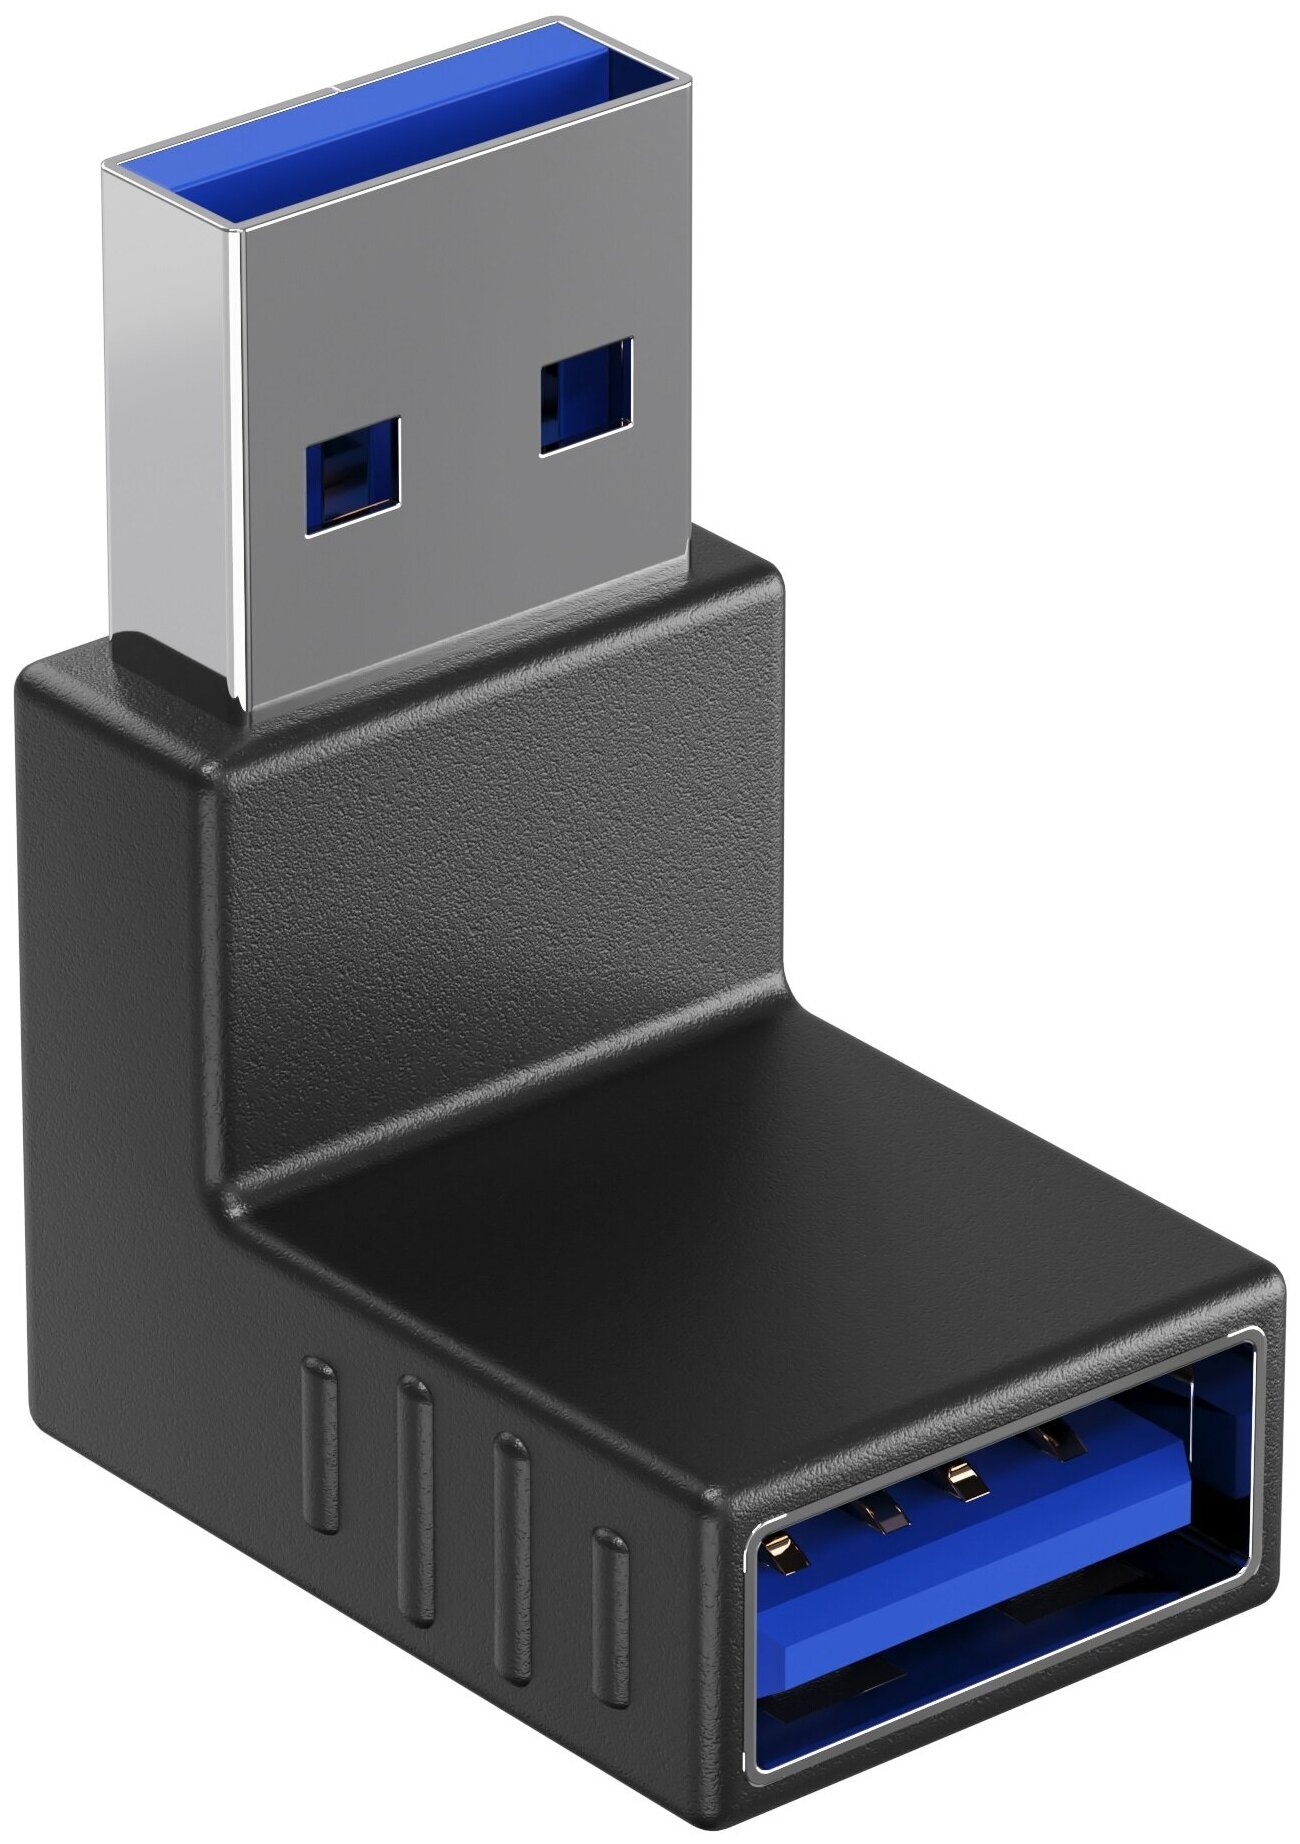 Адаптер-переходник GSMIN RT-51 (угловой 90°) USB 3.0 (F) - USB 3.0 (M) (Черный)